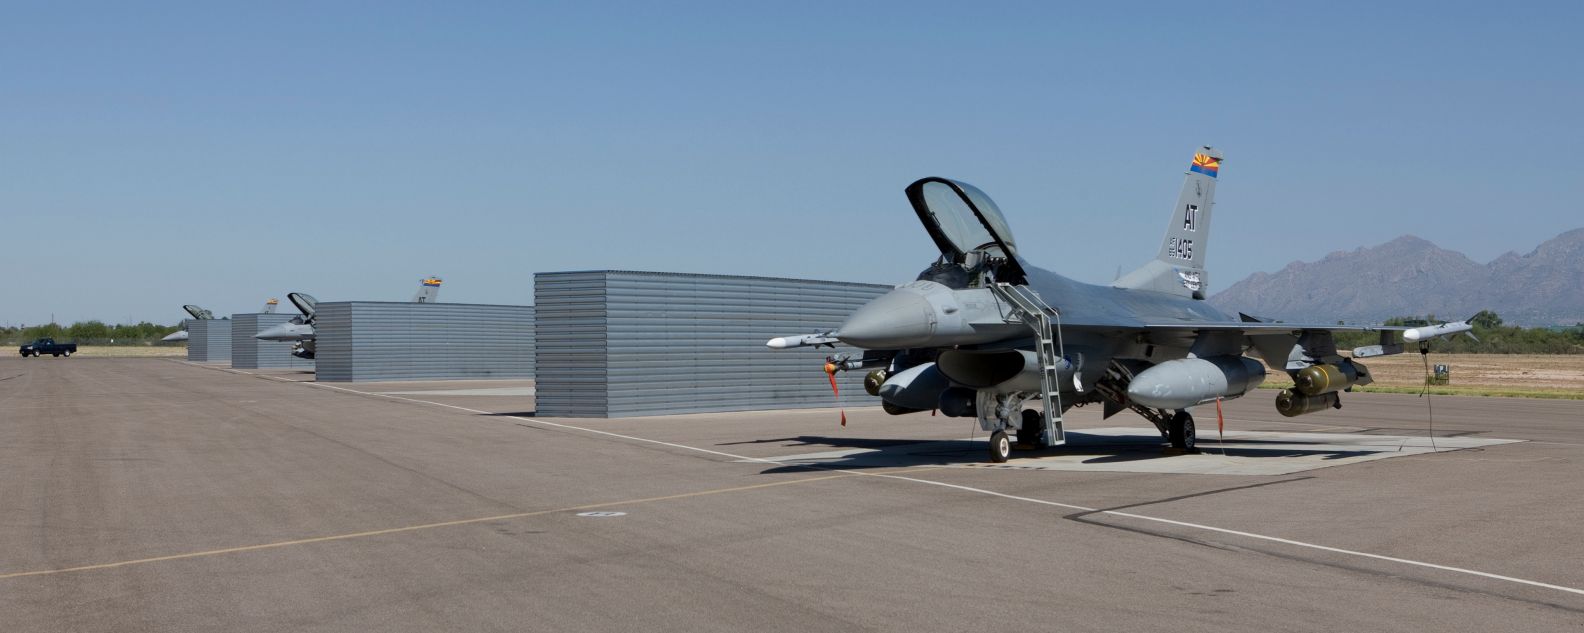 Tres F-16 del Centro de Pruebas de la Reserva de la Fuerza Aérea de la Guardia Nacional Aérea situados en los revestimientos de la Base Aérea Davis-Monthan antes de una misión de prueba